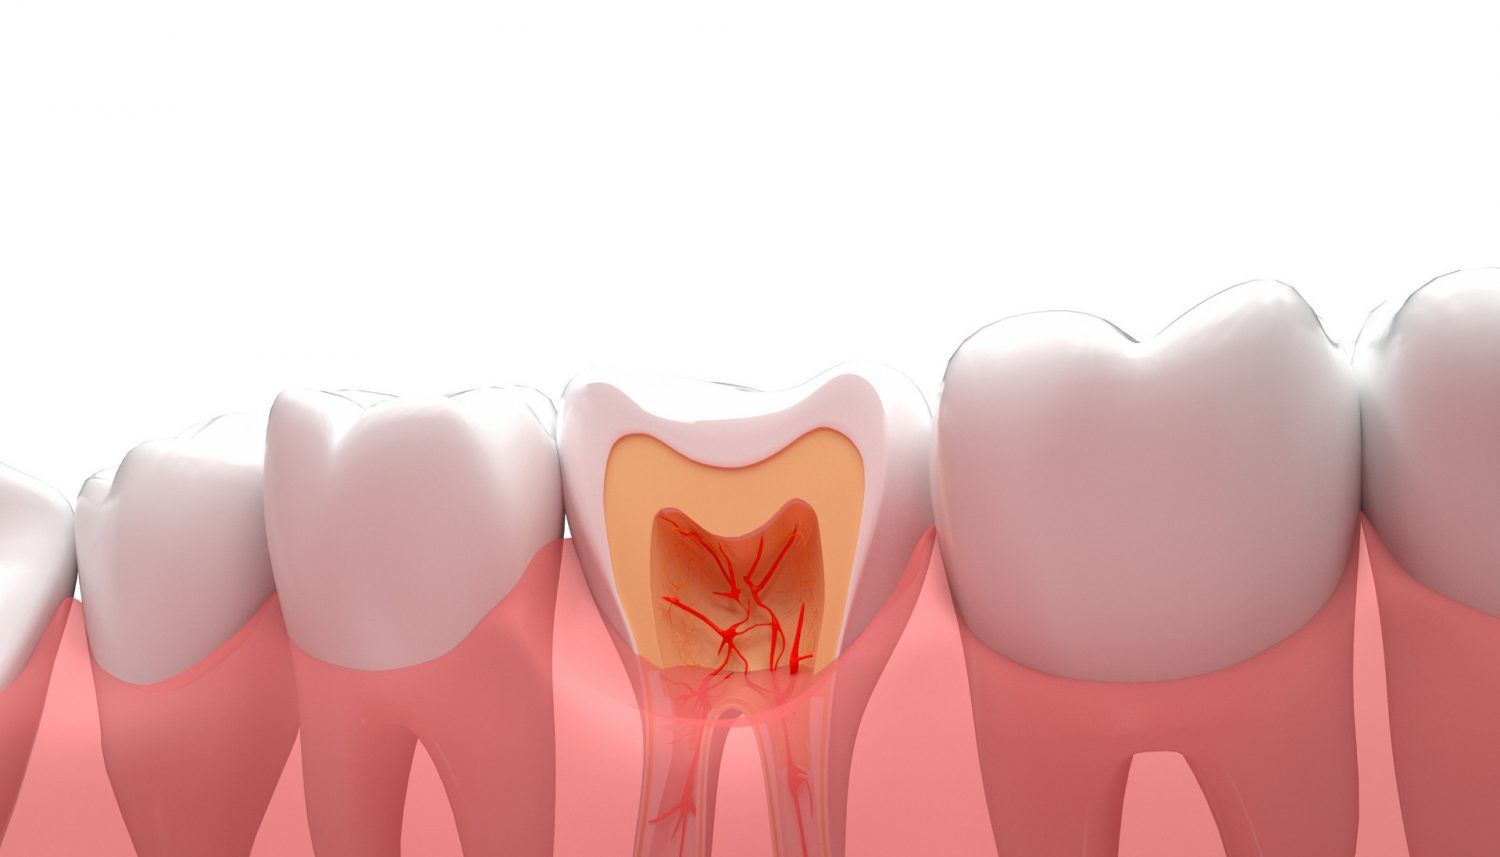 牙齿意外脱落或断裂：应对方法及紧急救治